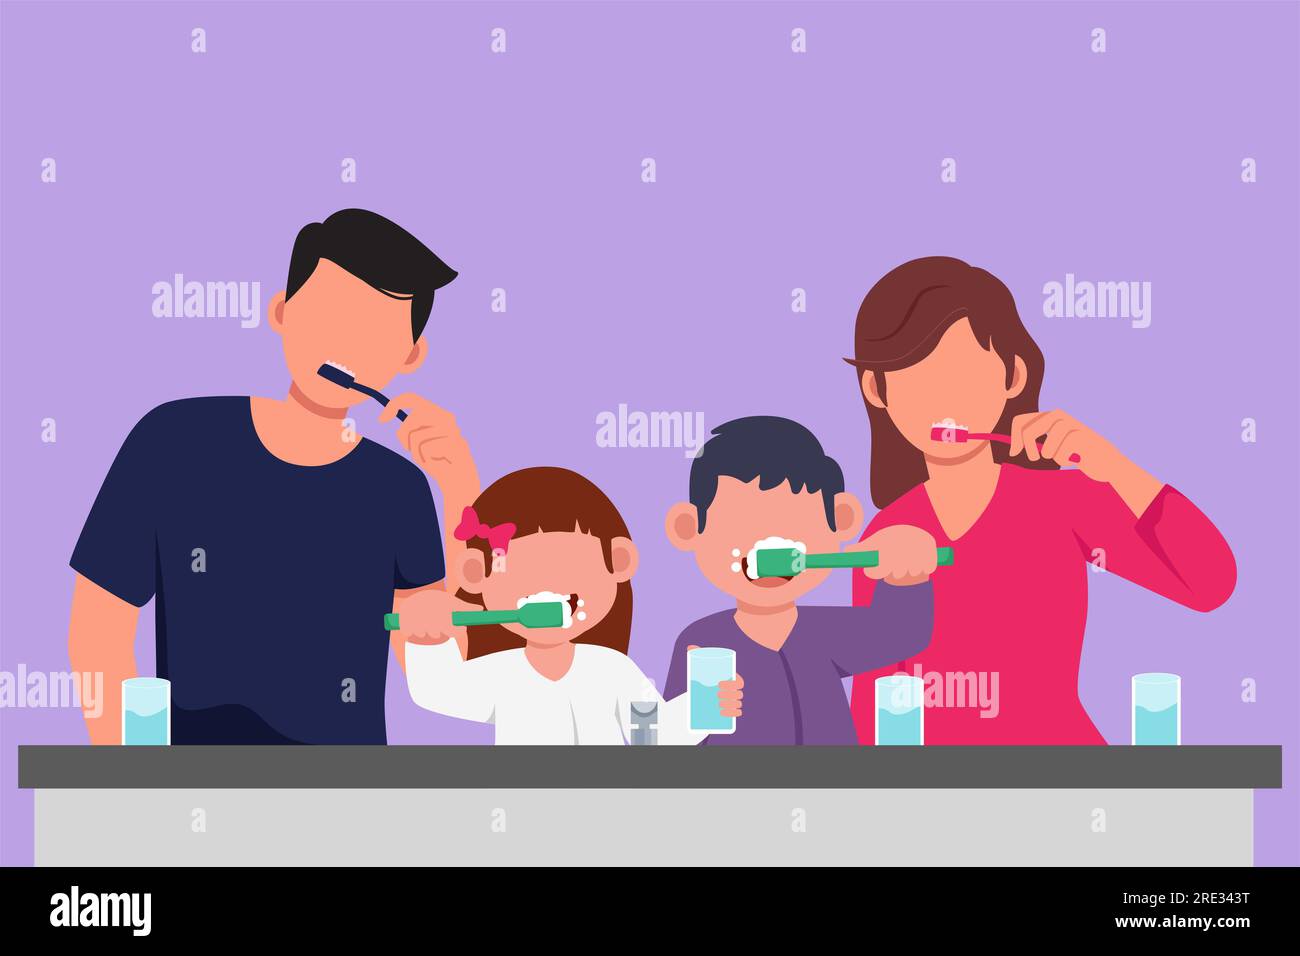 Dessin graphique plat de famille heureuse se brossant les dents ensemble avant le coucher. Habitudes de routine pour la propreté et la santé de la bouche et des dents Banque D'Images